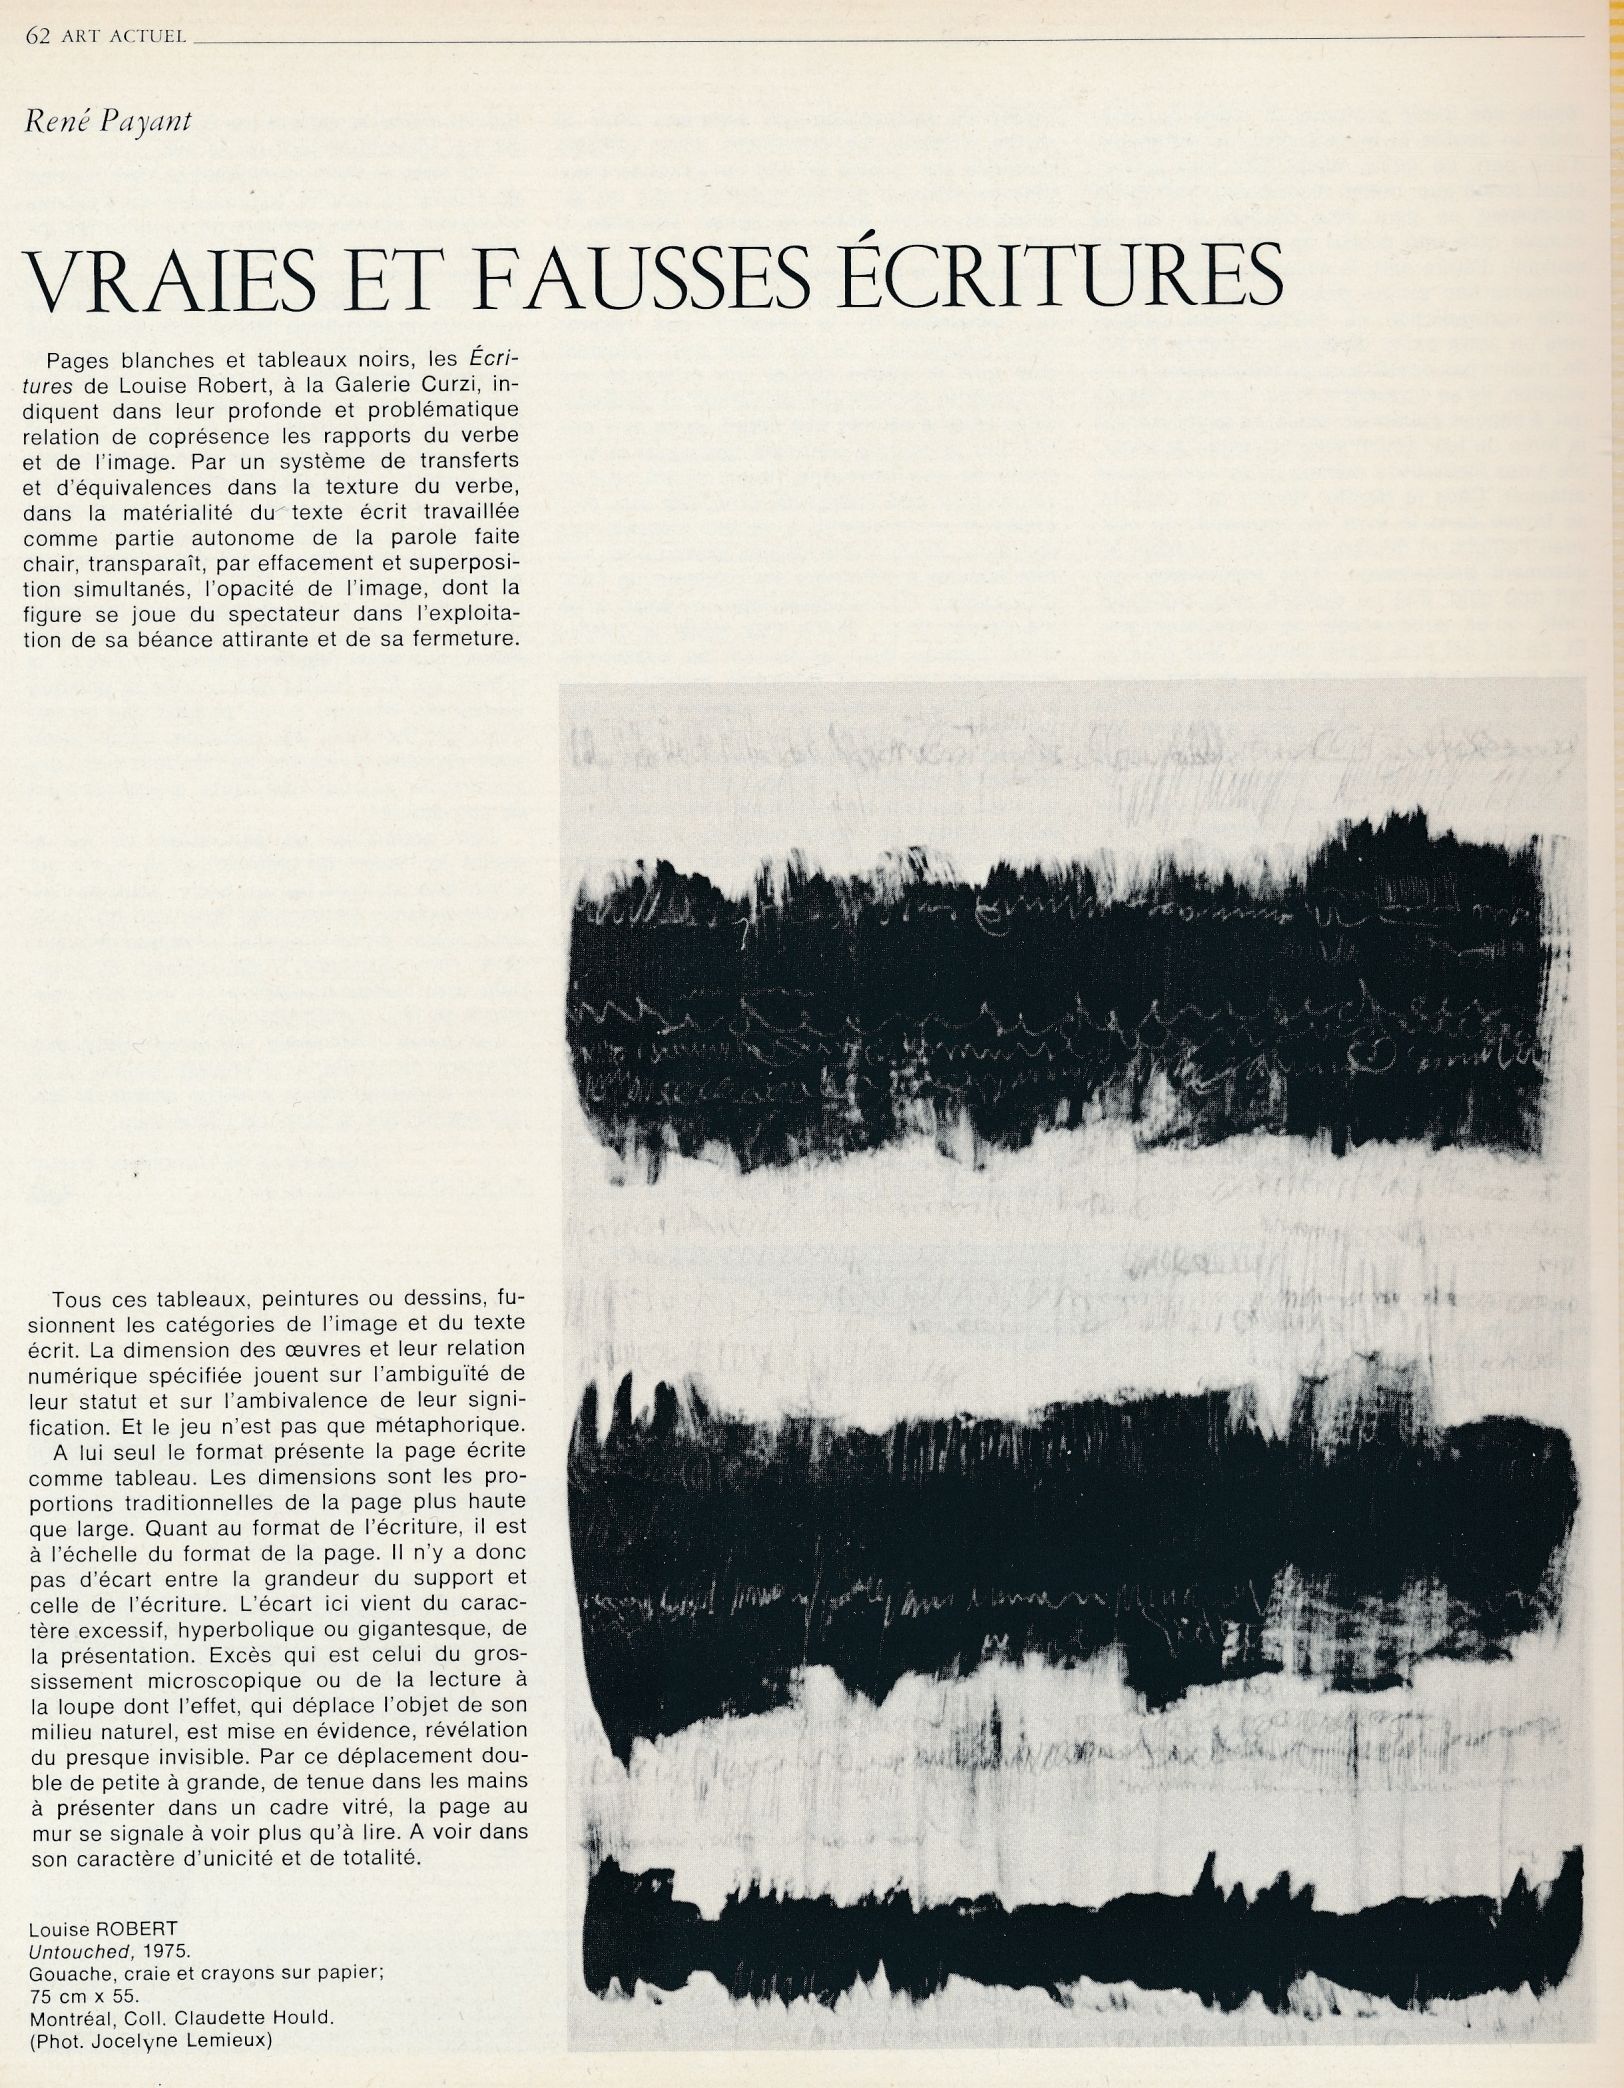 Texte de René Payant, « Vraies et fausses écritures », Vie des arts (Montréal), vol. 21, n° 84, automne 1976, p. 62.